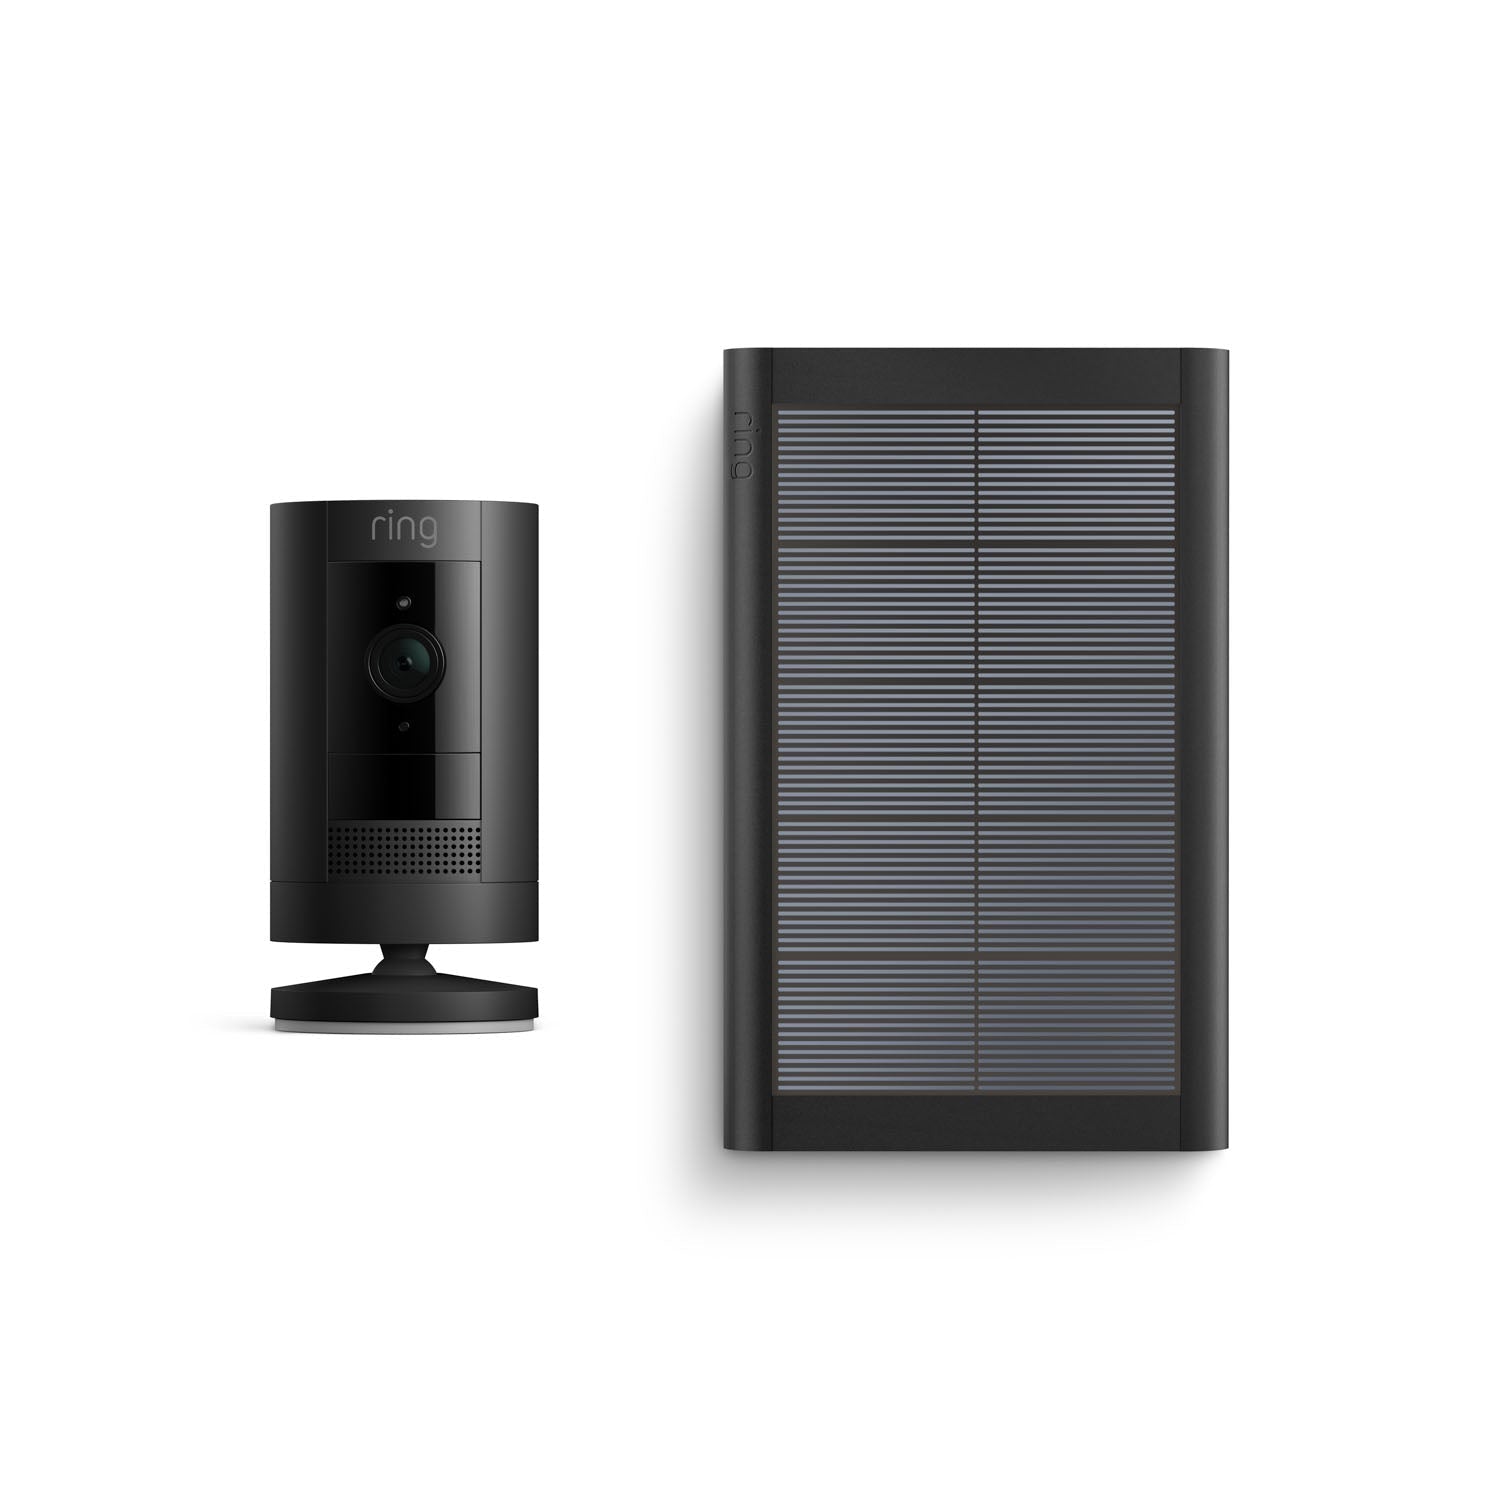 Stick Up Cam Solar - Black:Stick Up Cam Solar